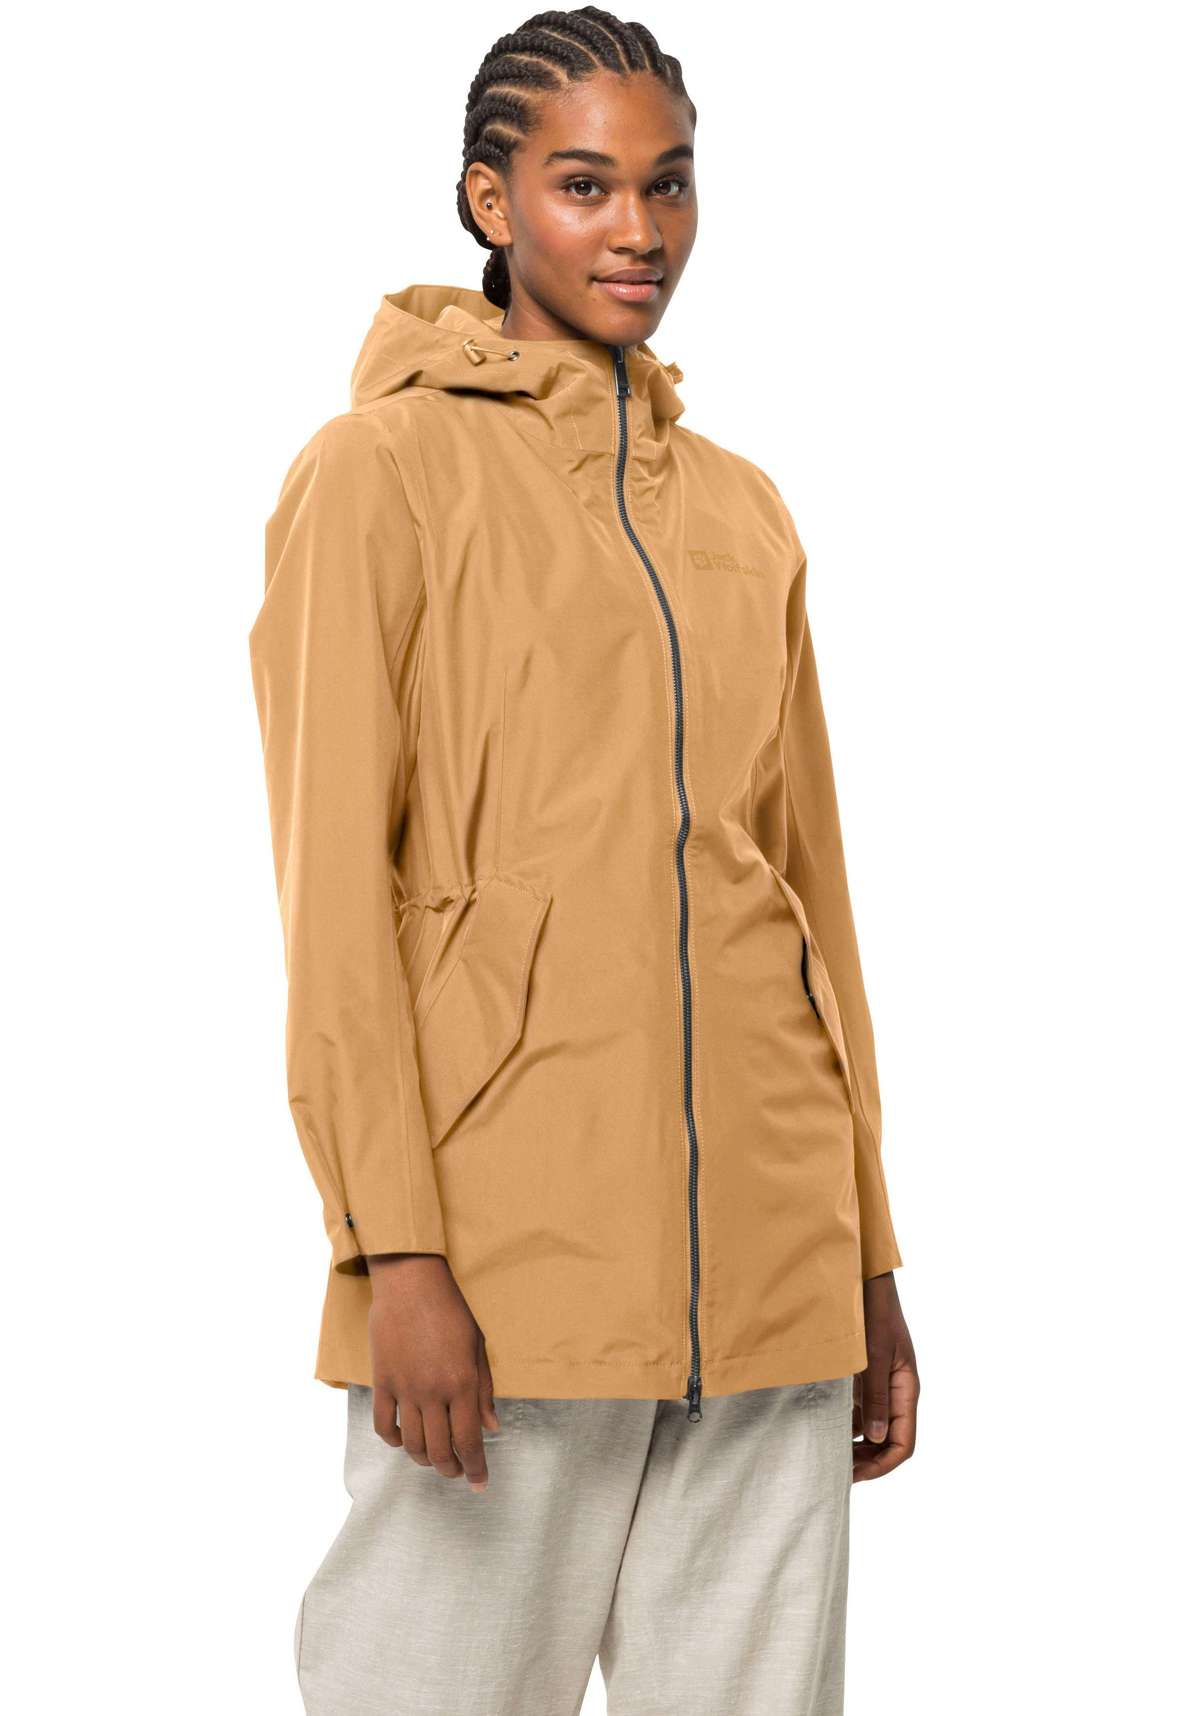 Функциональная куртка DAKAR, водоотталкивающая и ветрозащитная.